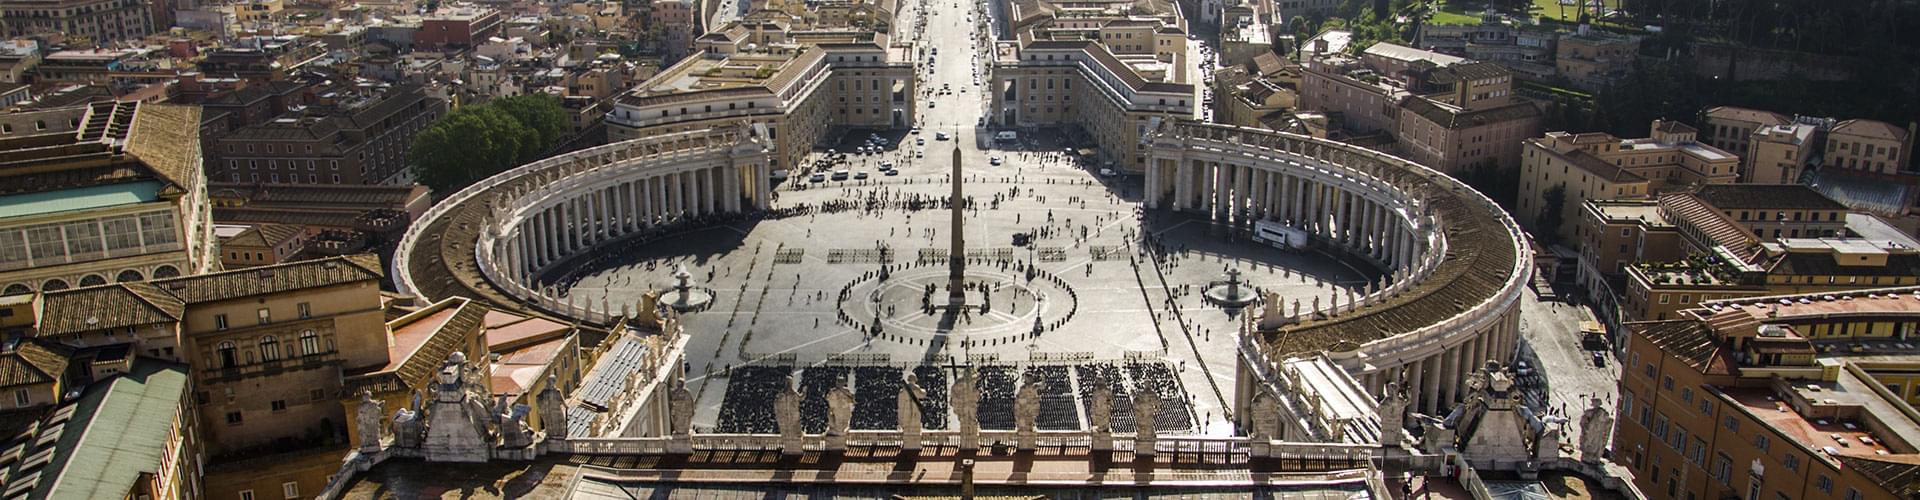 The Vatican, vatican city